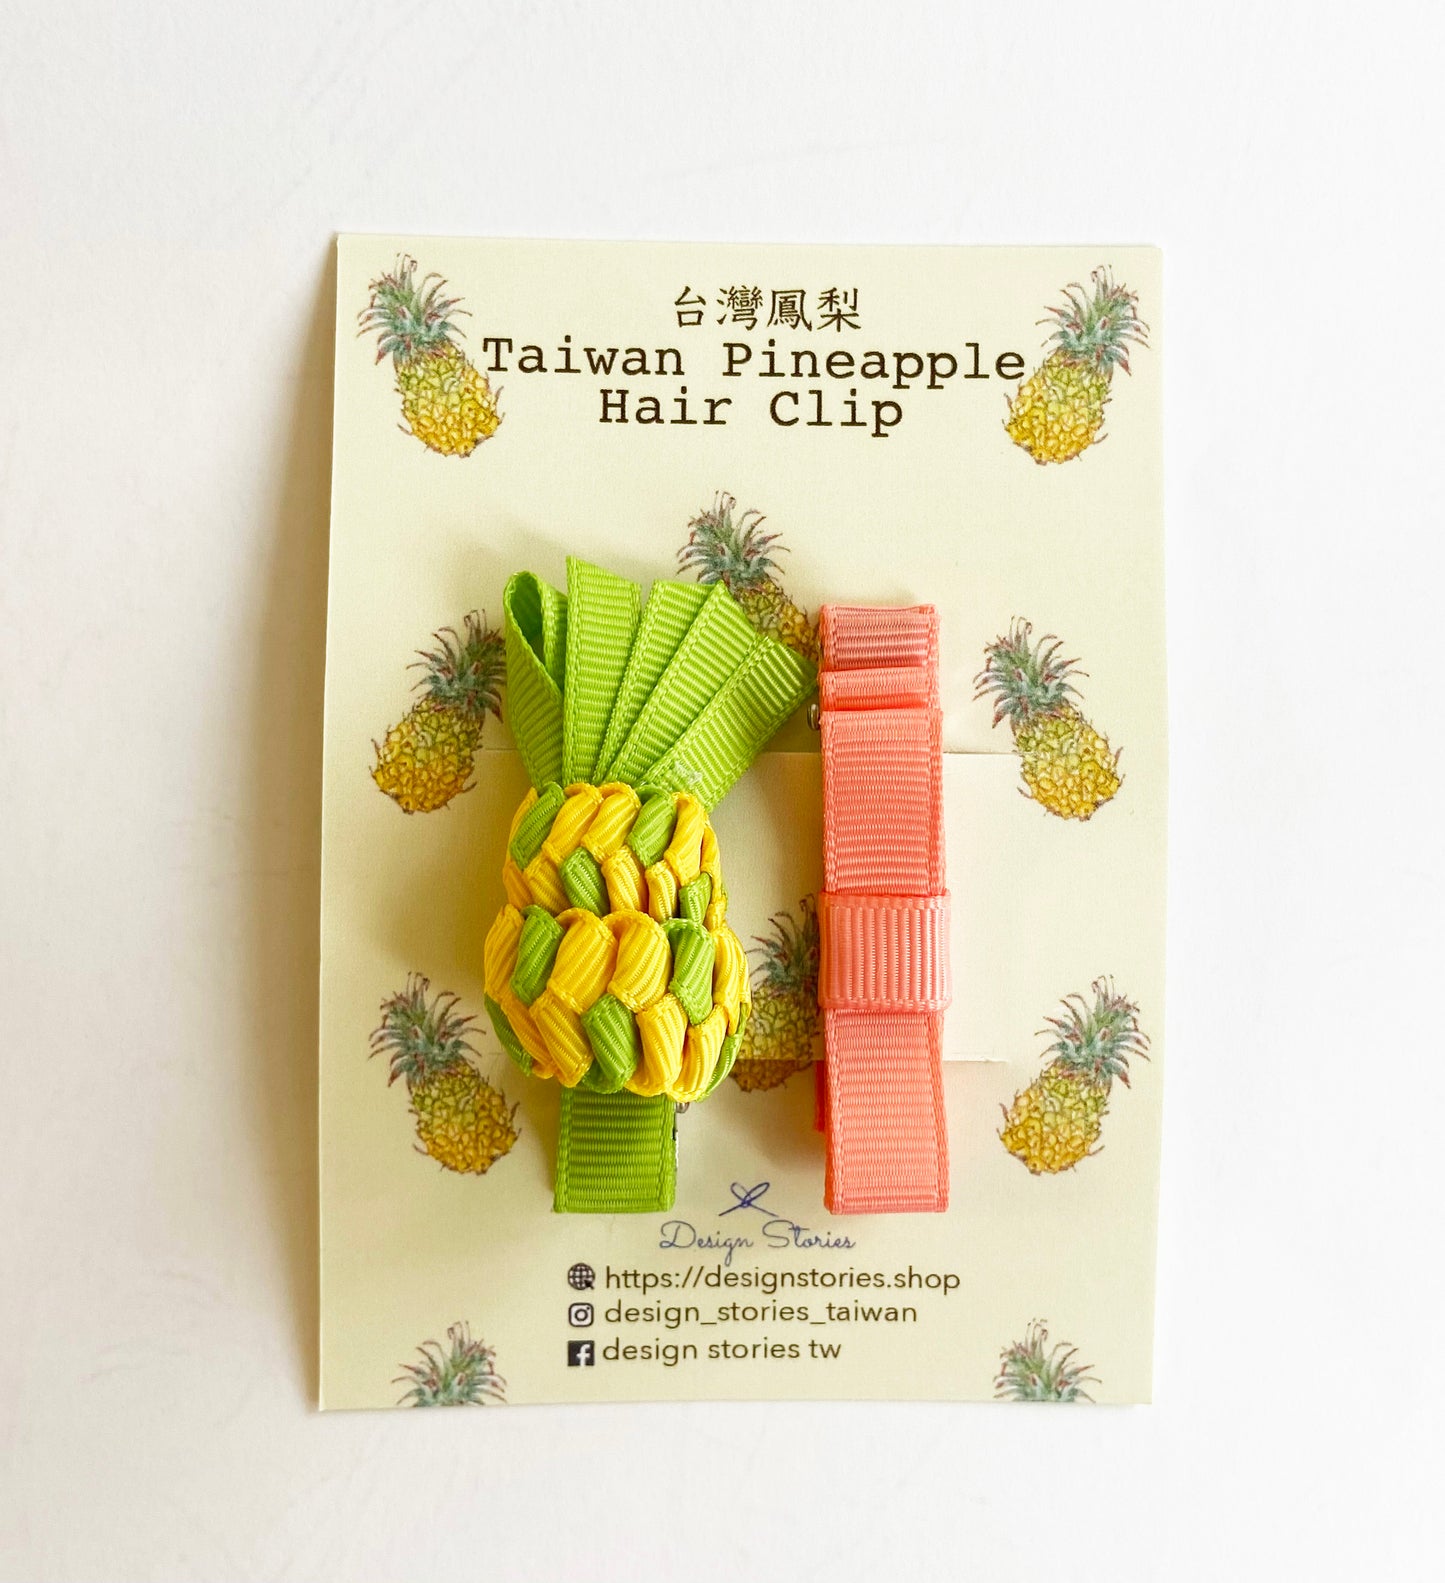 New❗️Taiwan Pineapple Hair Clip